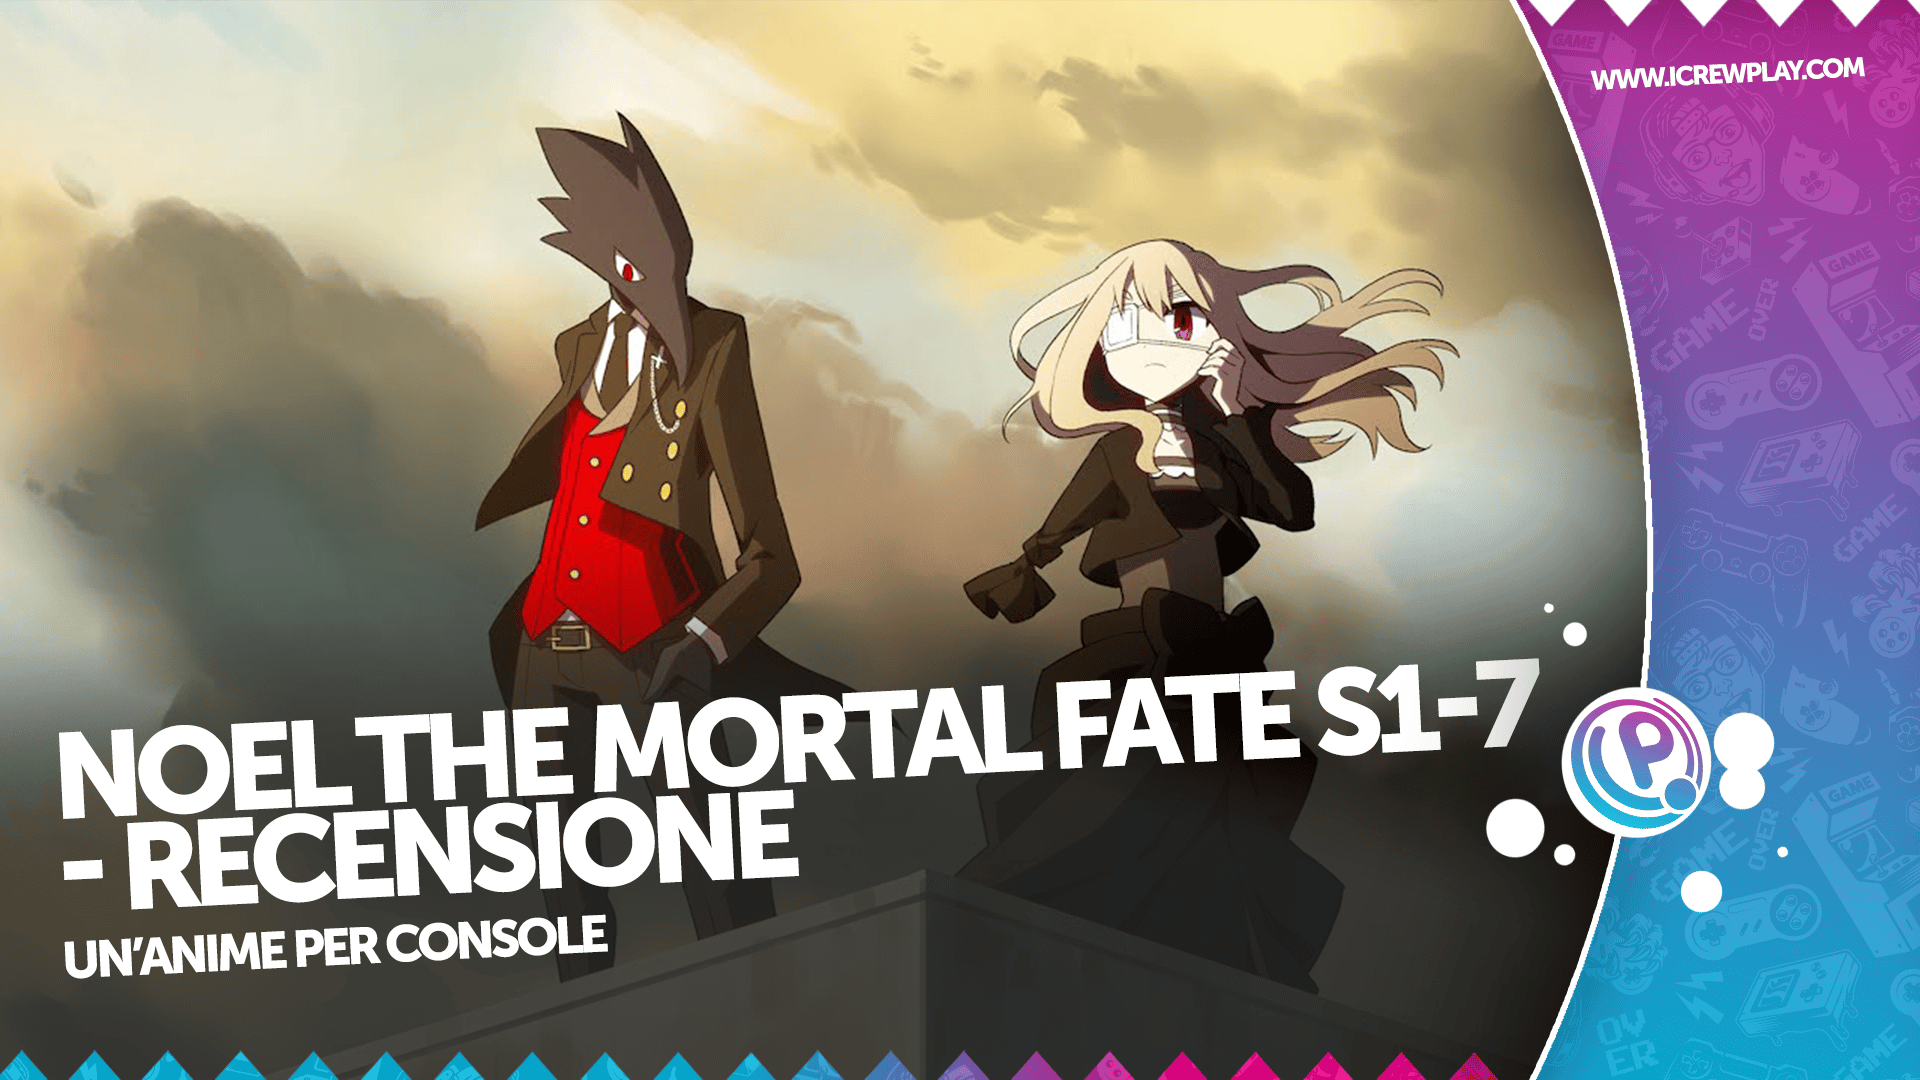 Noel The Mortal Fate S1-7 - Recensione per Nintendo Switch 6